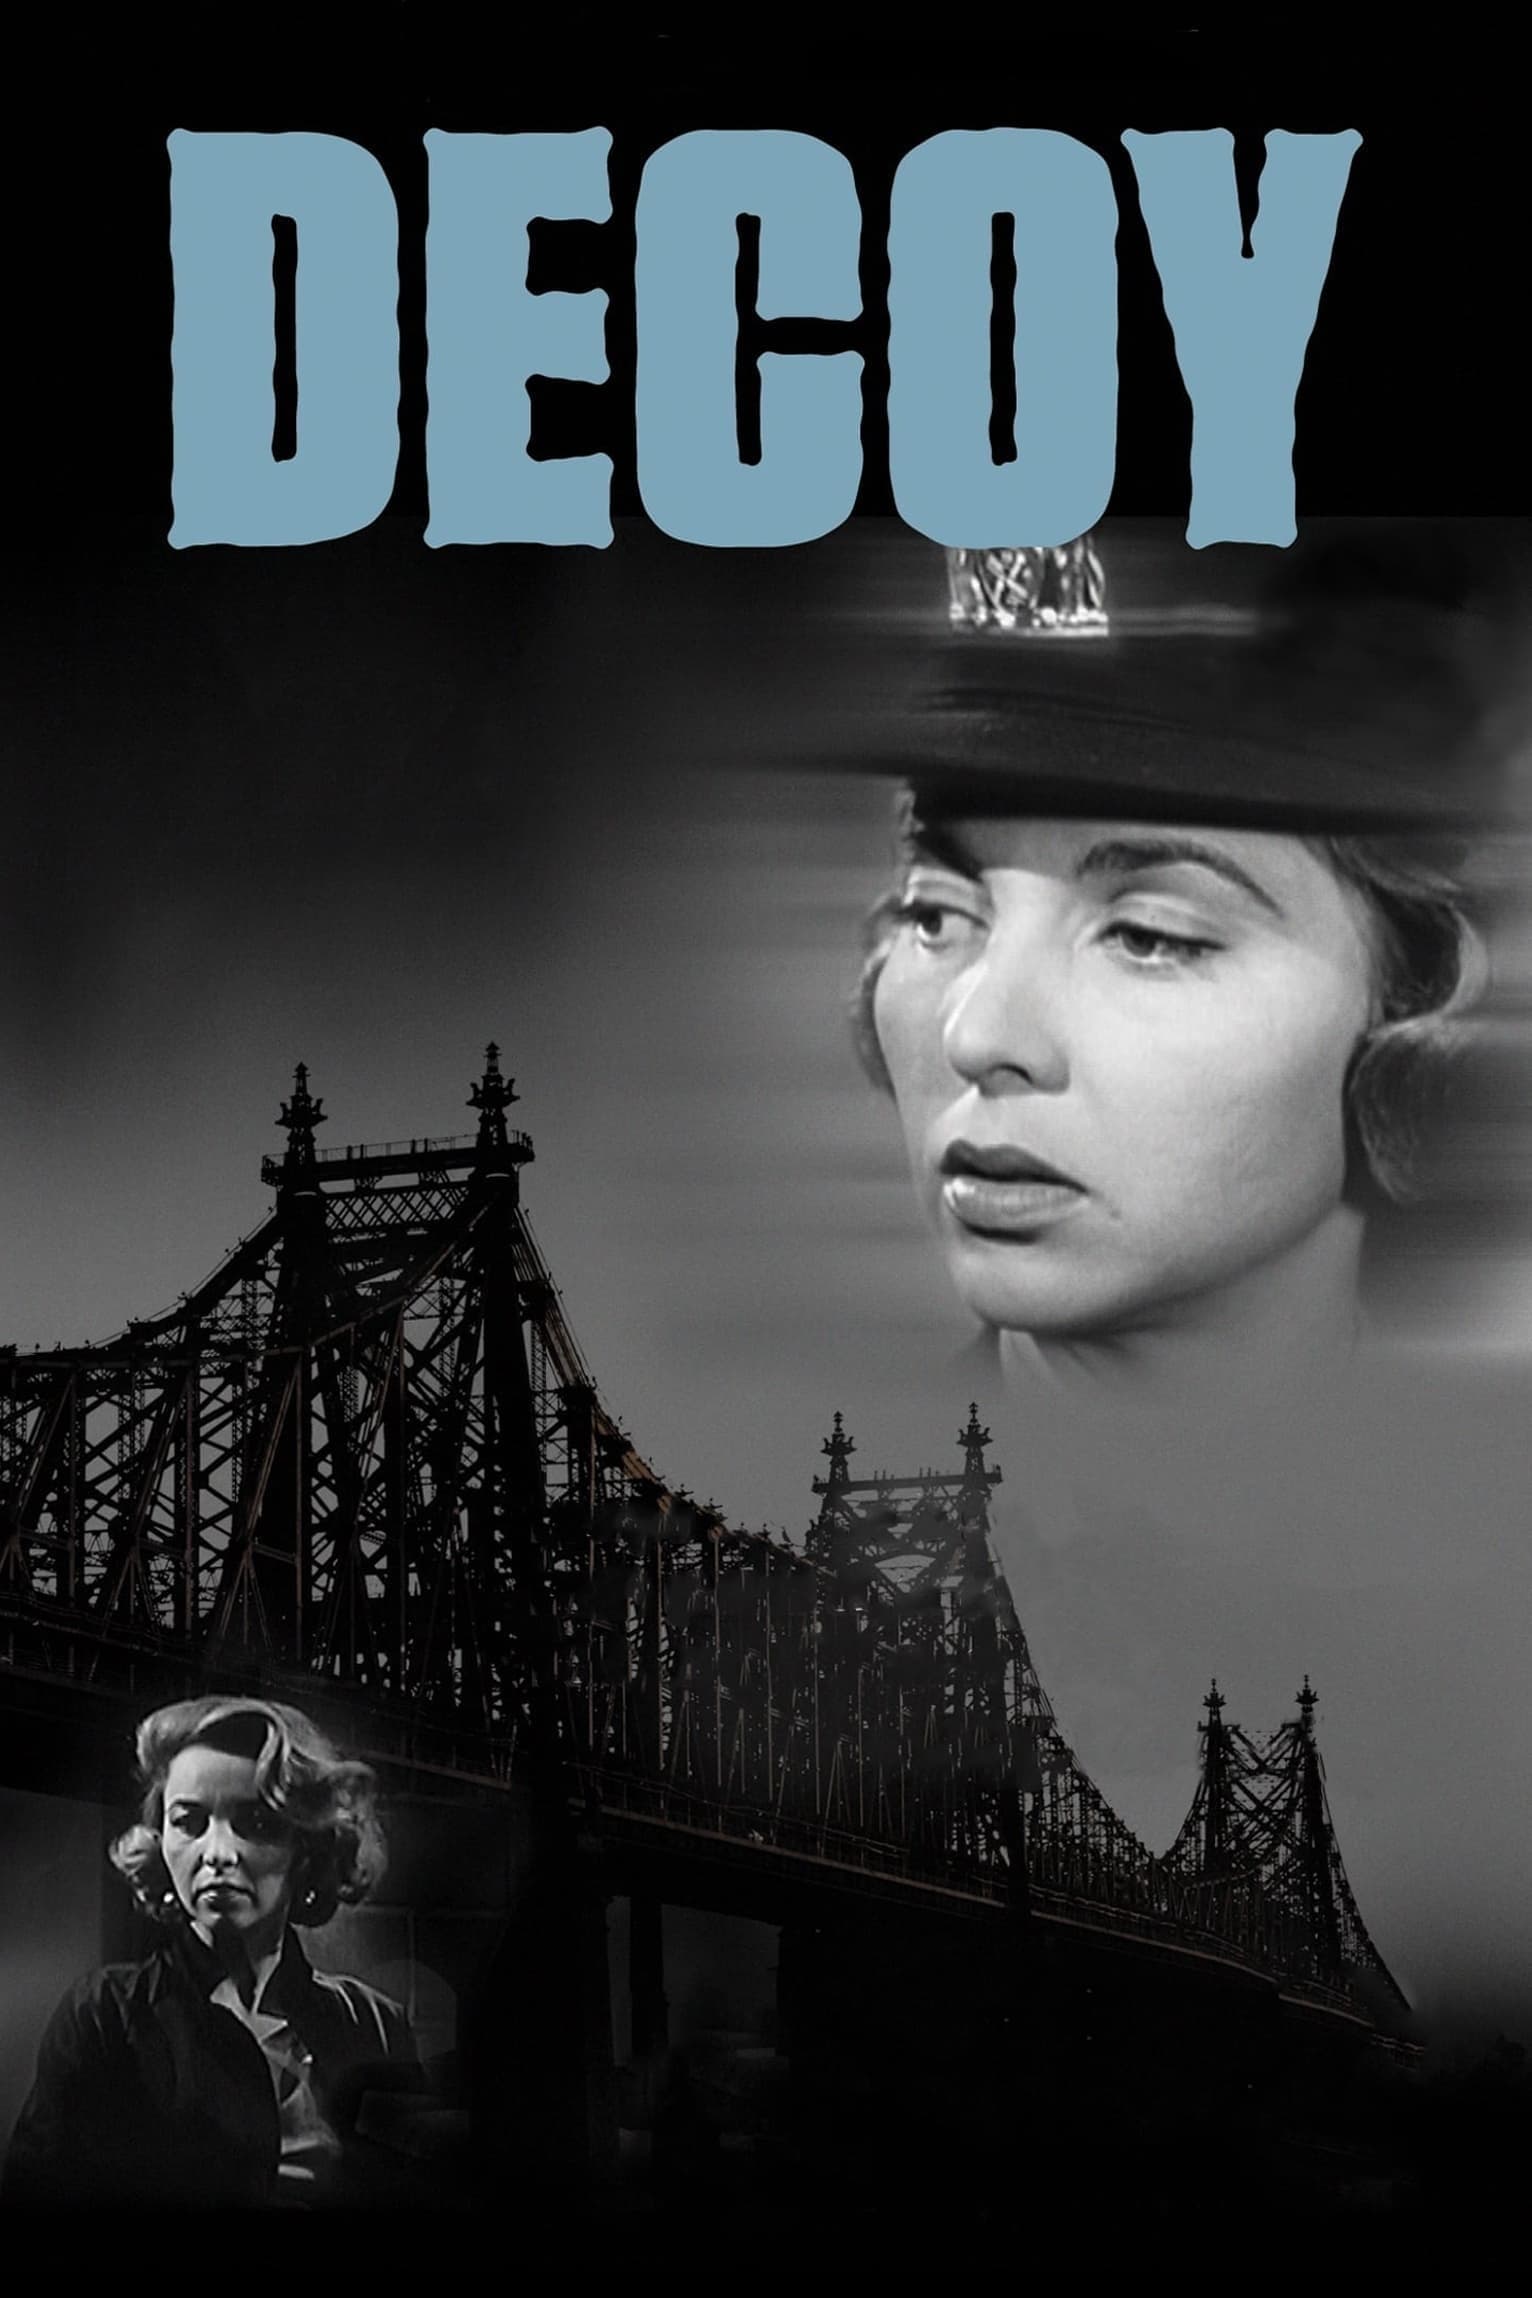 Decoy (1957)